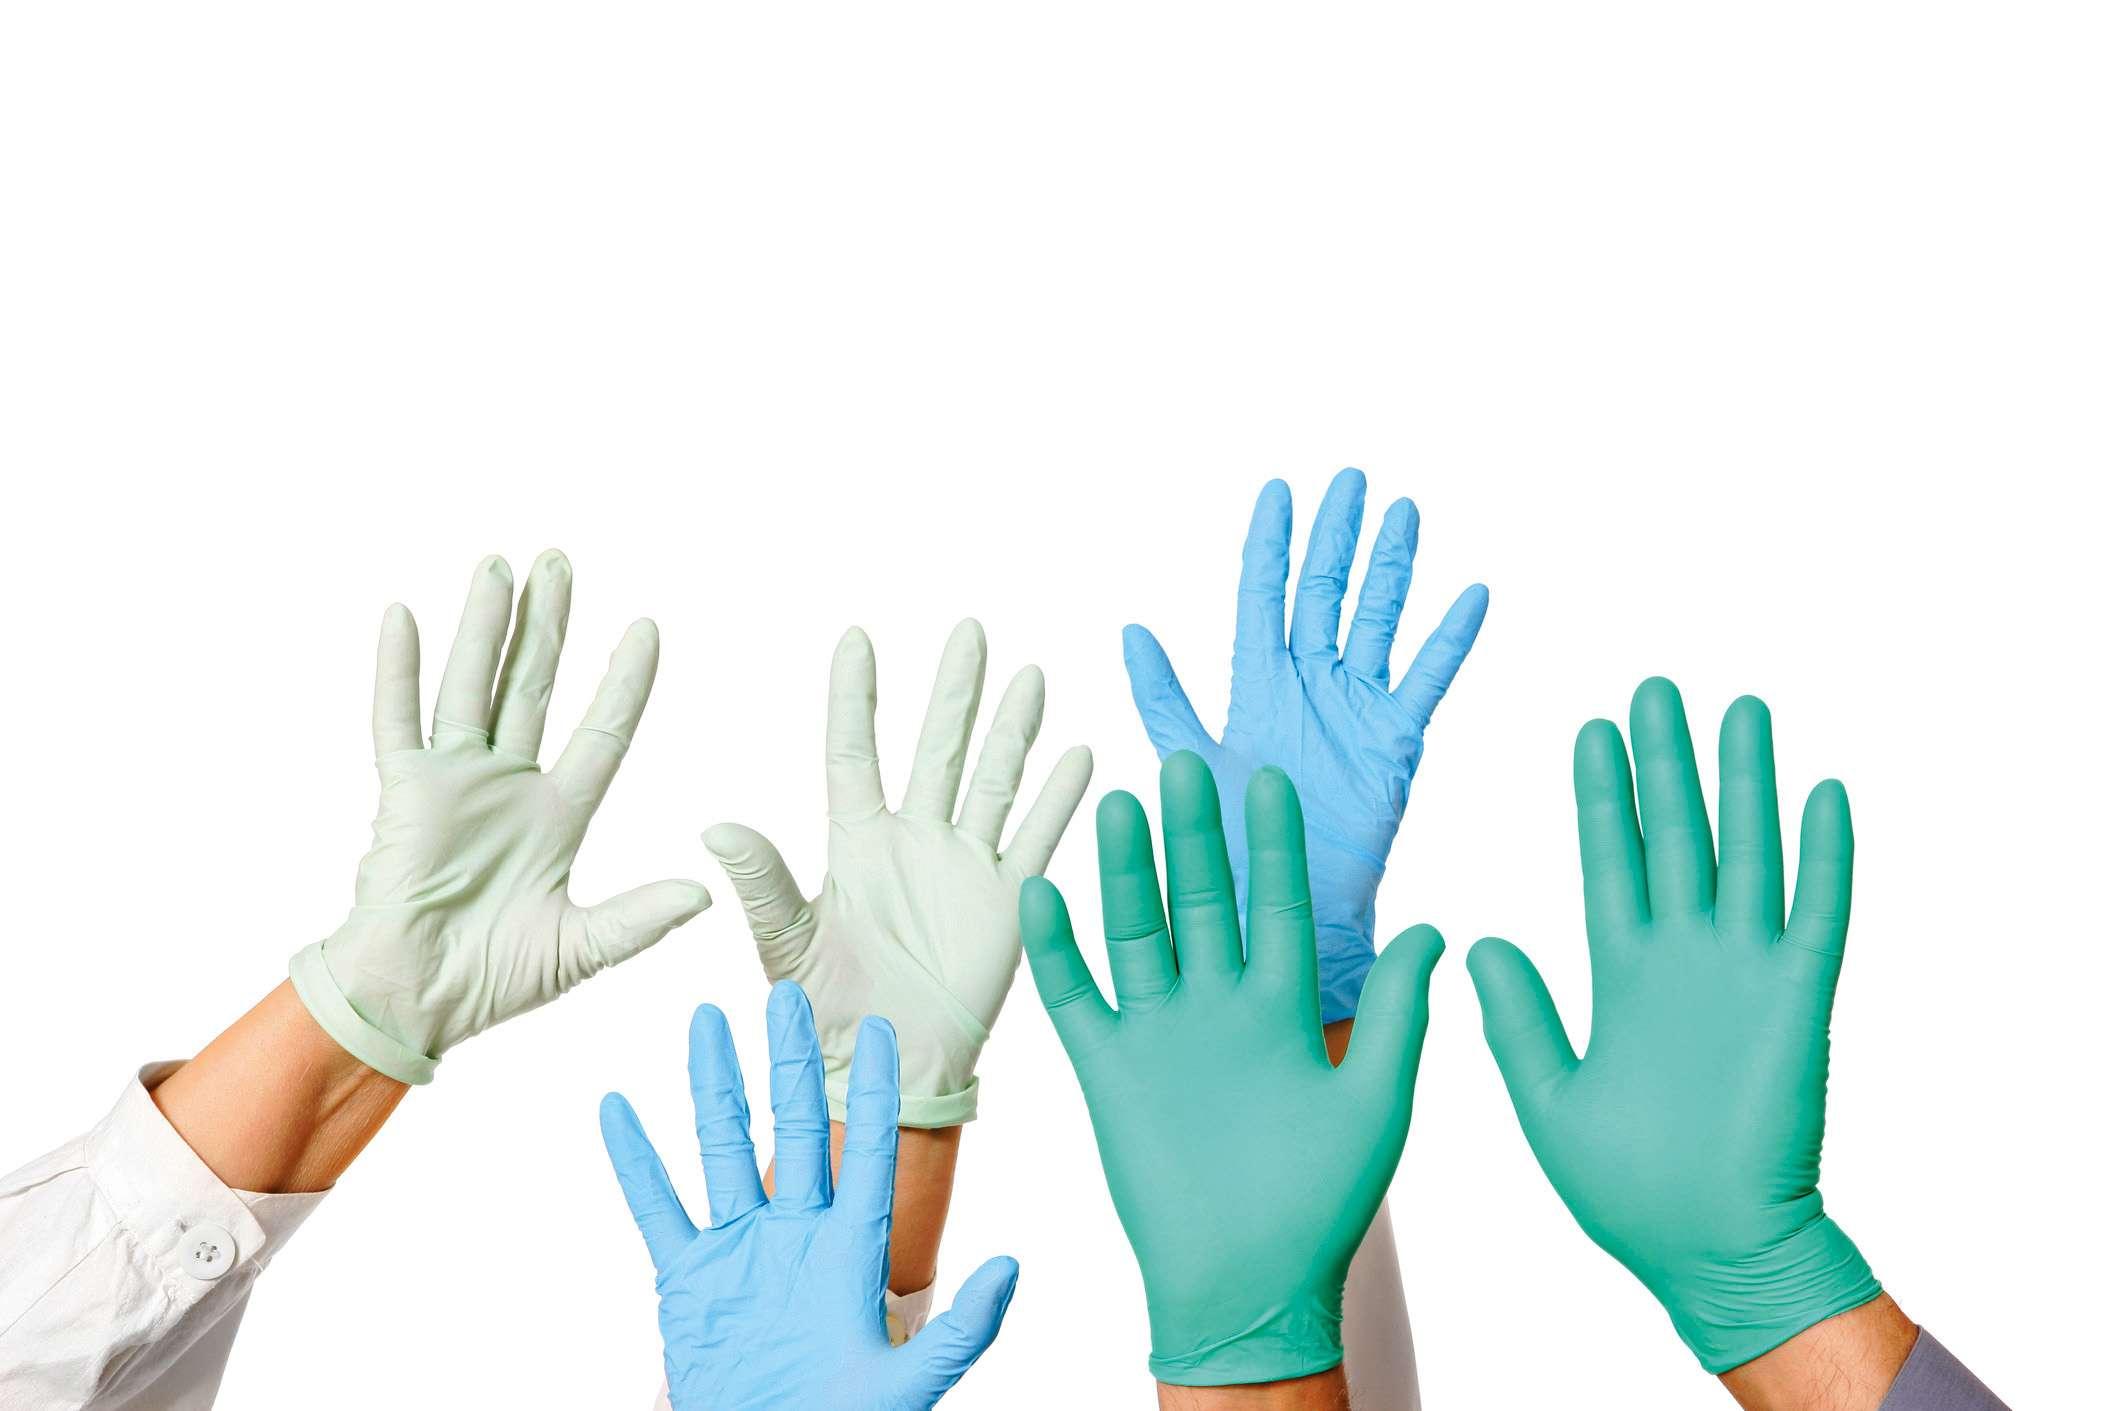 Viele Ärzte Hände in Handschuhen, isoliert auf weiss.